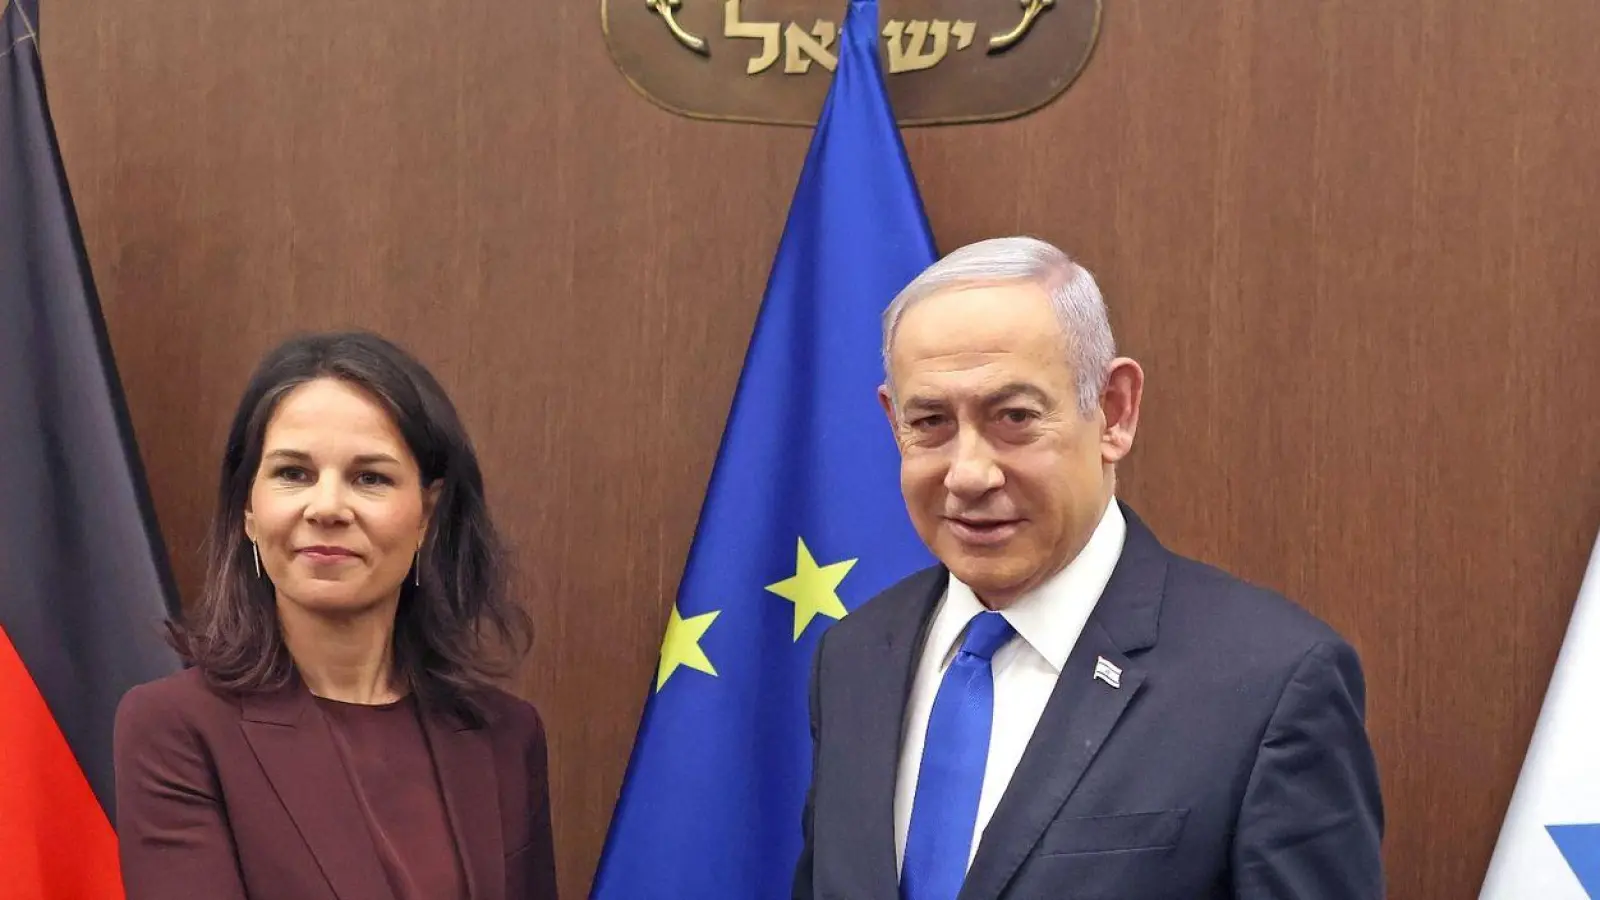 Außenministerin Annalena Baerbock ist angesichts der angespannten Lage erneut zu Israels Premierminister Benjamin Netanjahu gereist. (Foto: Ilia Yefimovich/dpa)